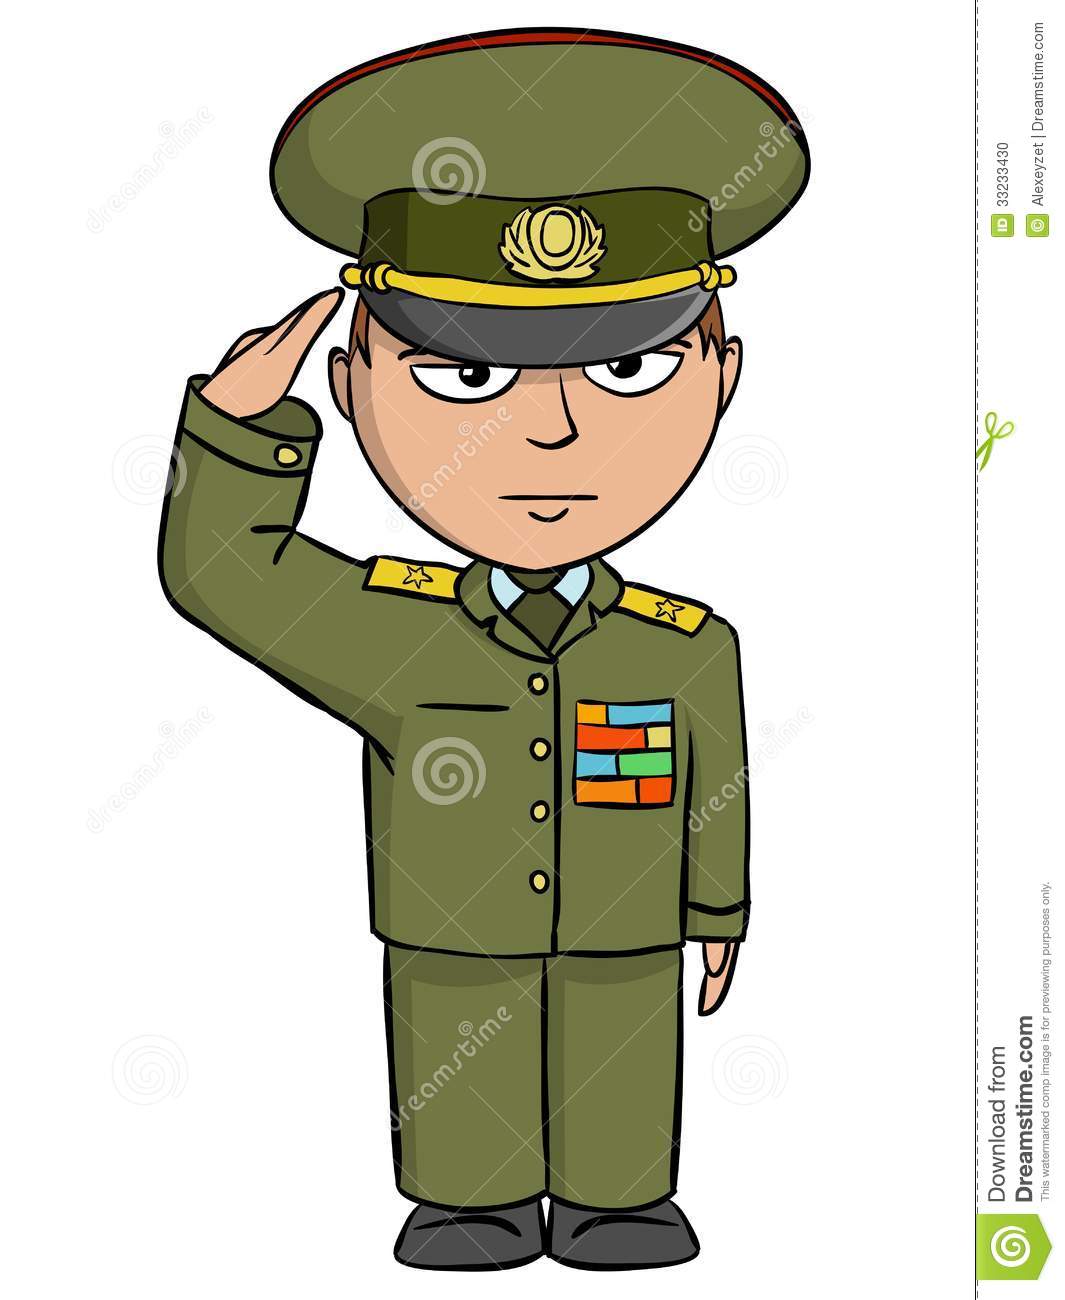 Sauda  Es Militares Do Homem Dos Desenhos Animados Foto De Stock    